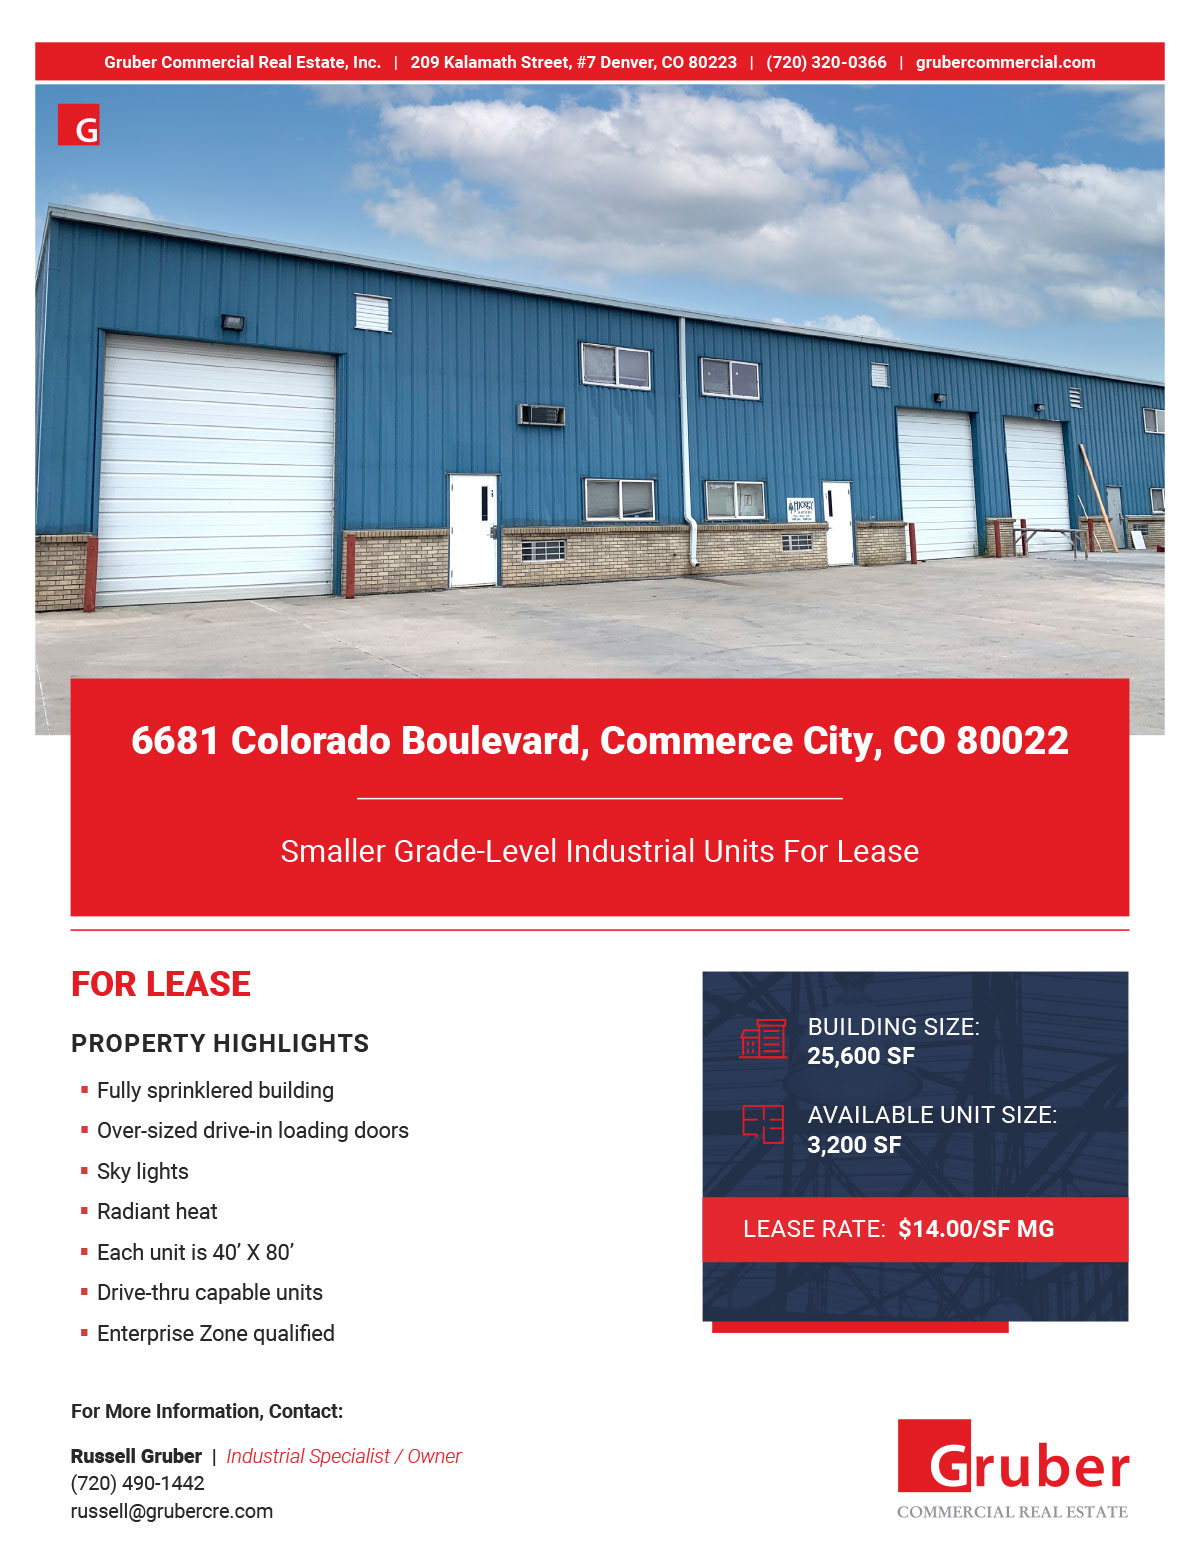 6681 Colorado Boulevard Brochure